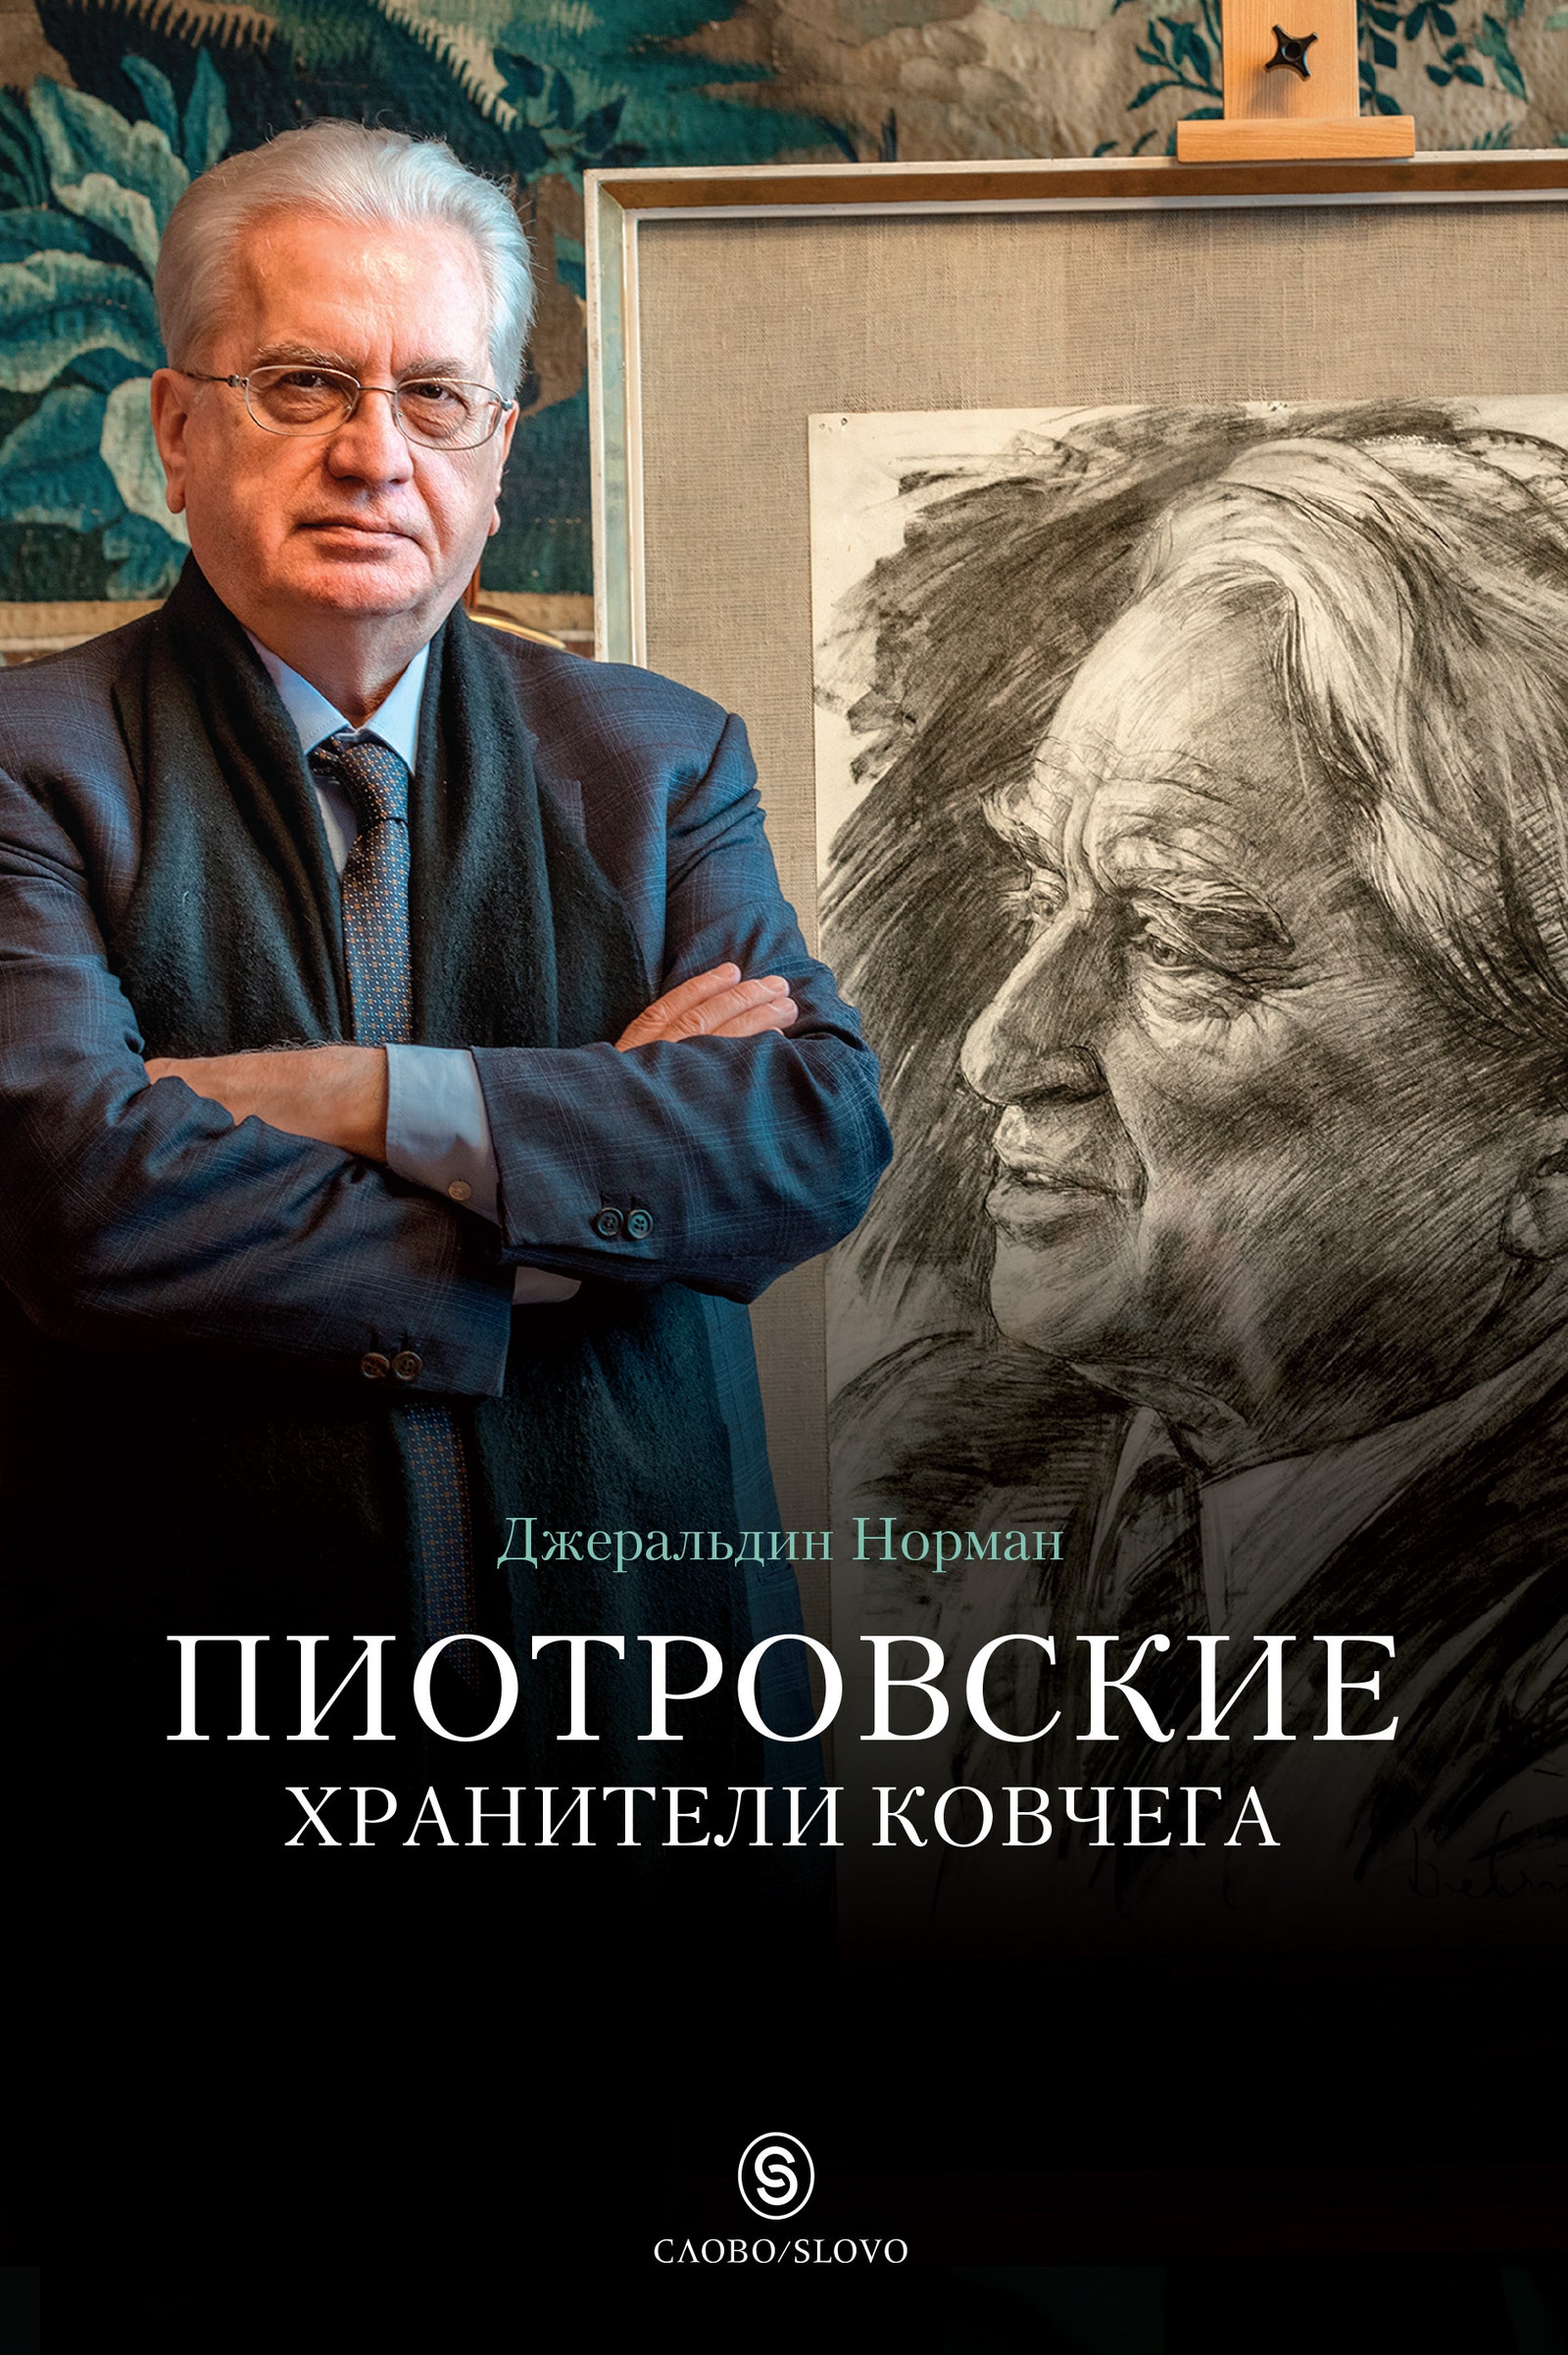 Что нужно знать о директоре Эрмитажа Михаиле Пиотровском и зачем его биографию выпустили в Лондоне